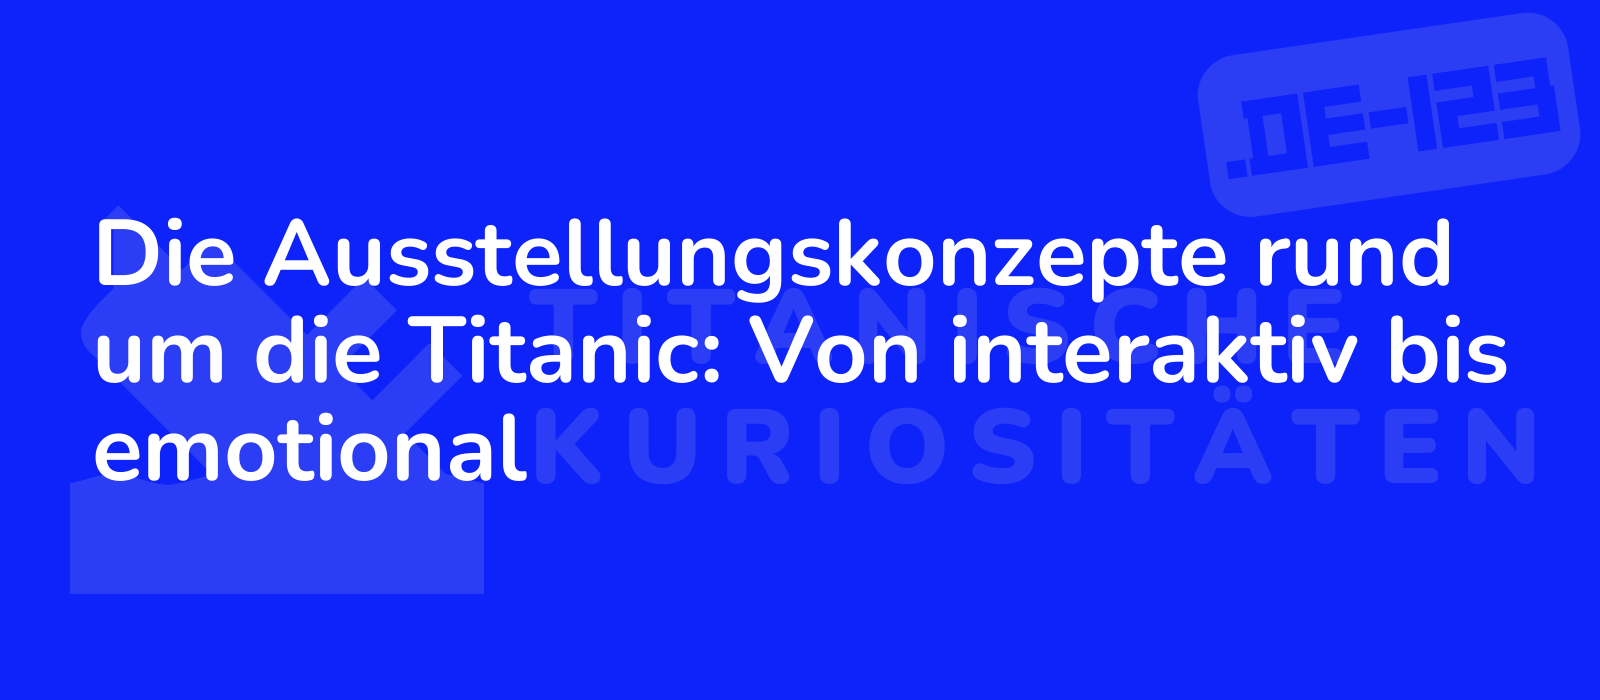 Die Ausstellungskonzepte rund um die Titanic: Von interaktiv bis emotional